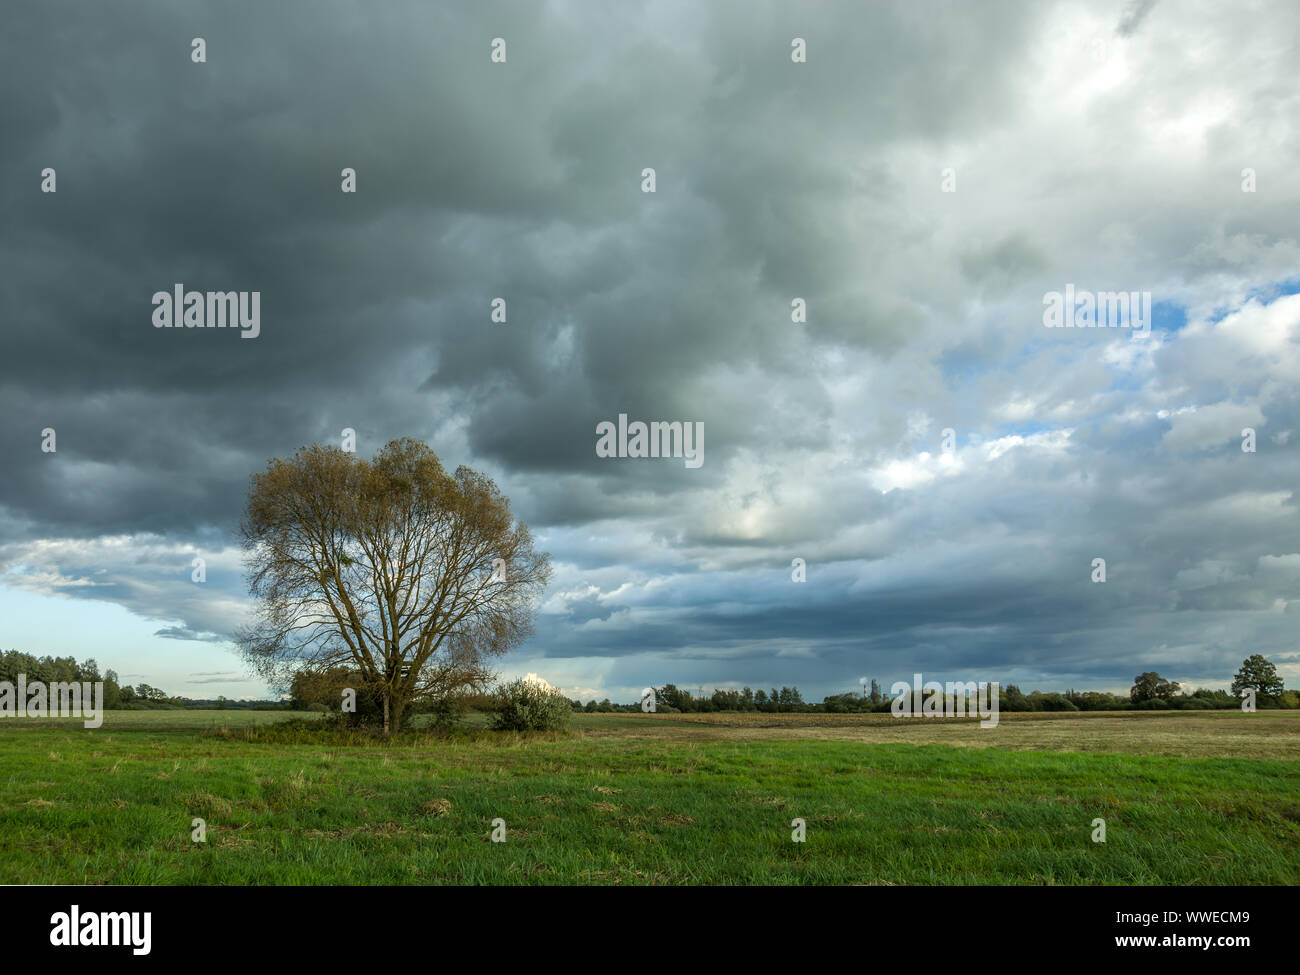 Albero nel prato e scure nuvole di pioggia Foto Stock